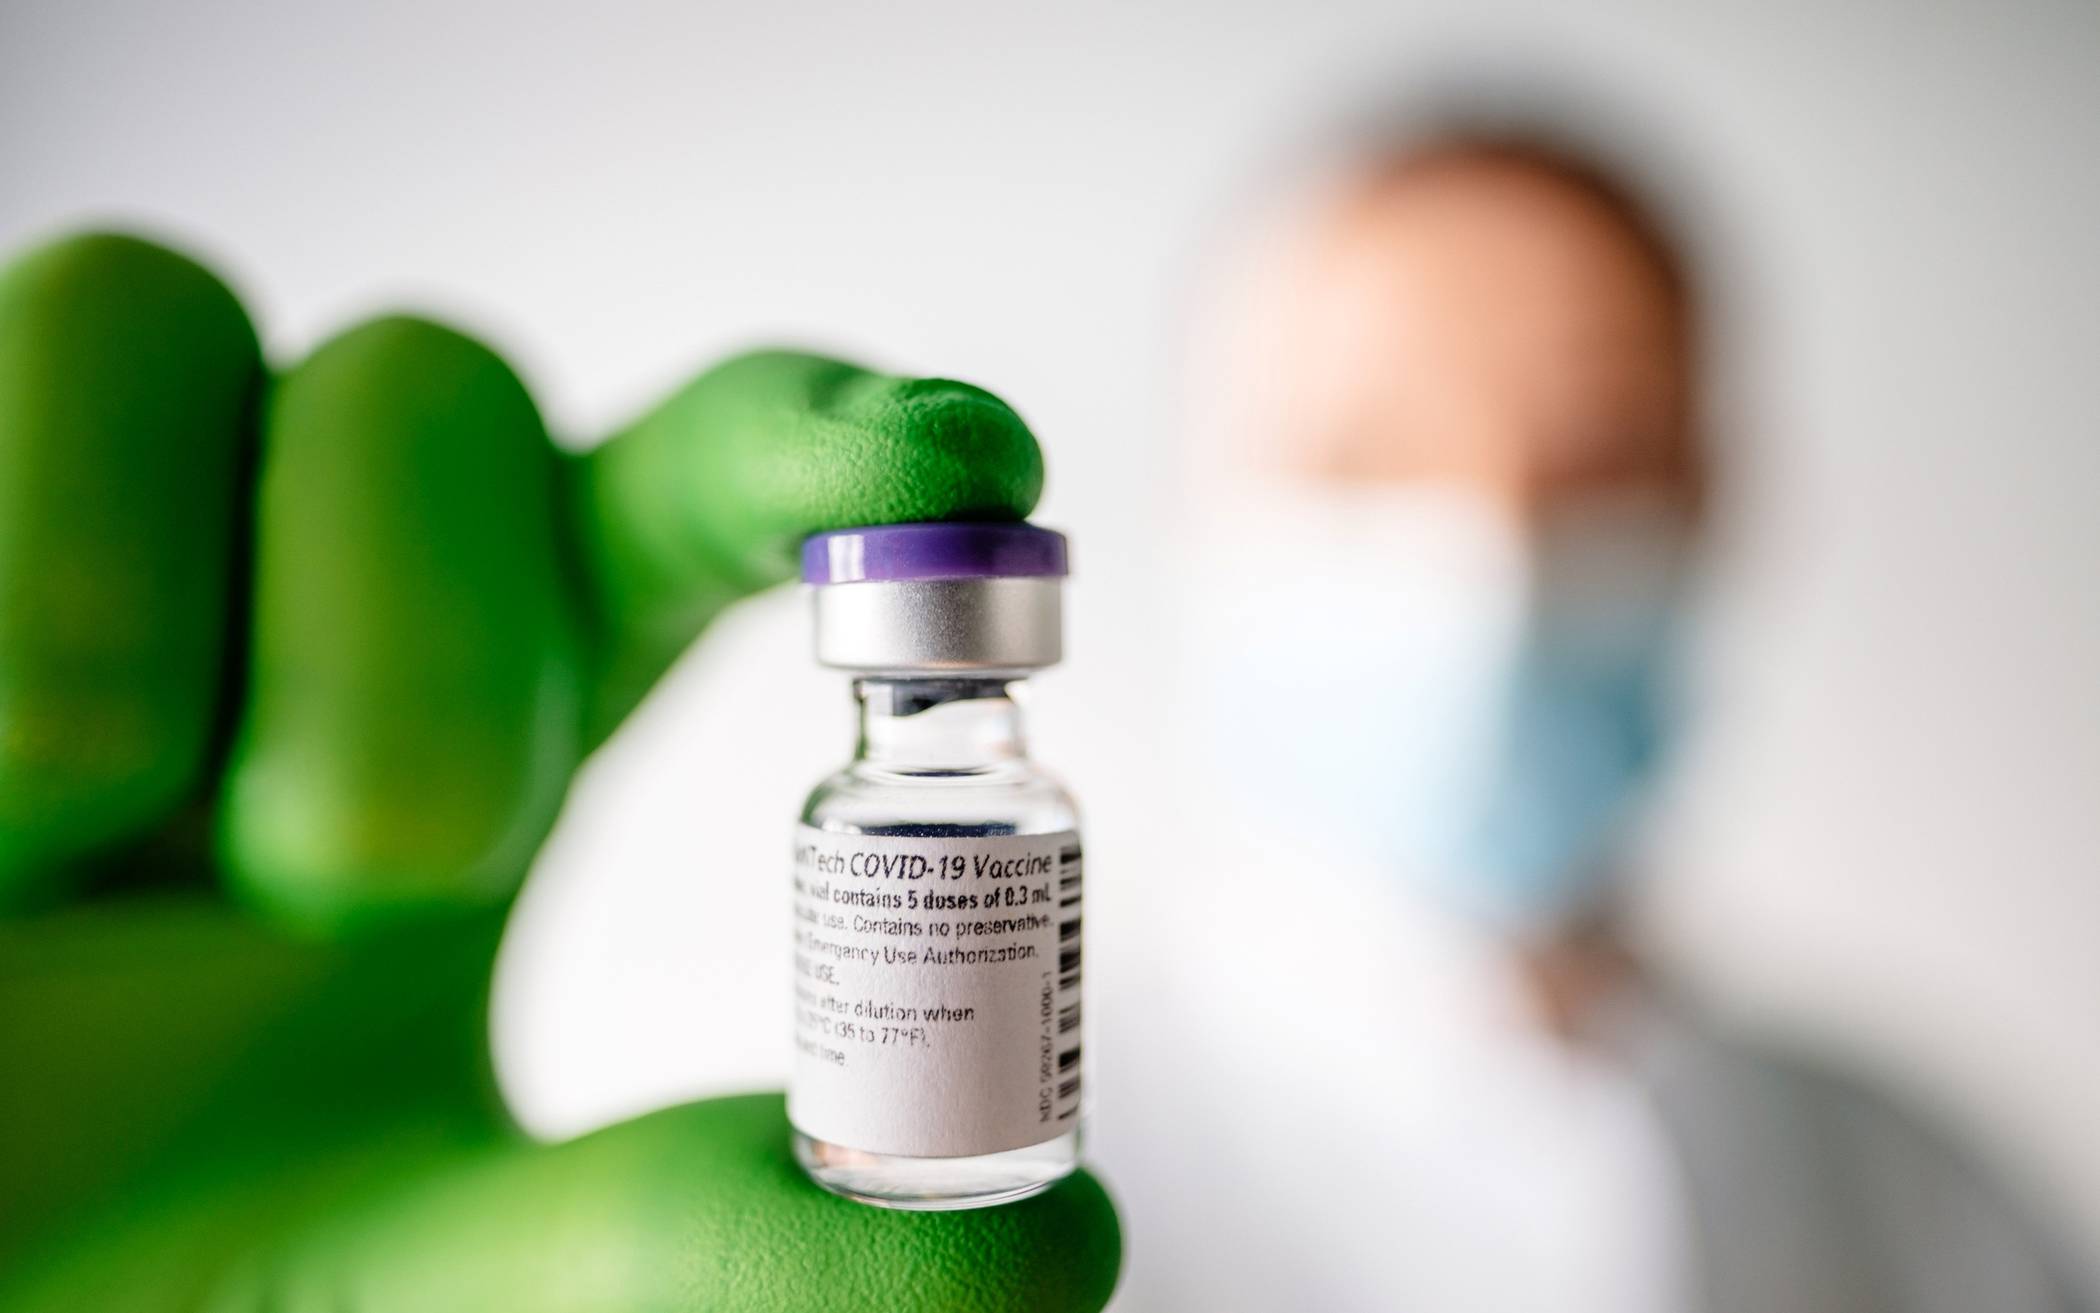  Rund um die Corona-Schutzimpfung gibt es immer noch viele Fragen. Antworten liefert die Bundeszentrale für gesundheitliche Aufklärung. 